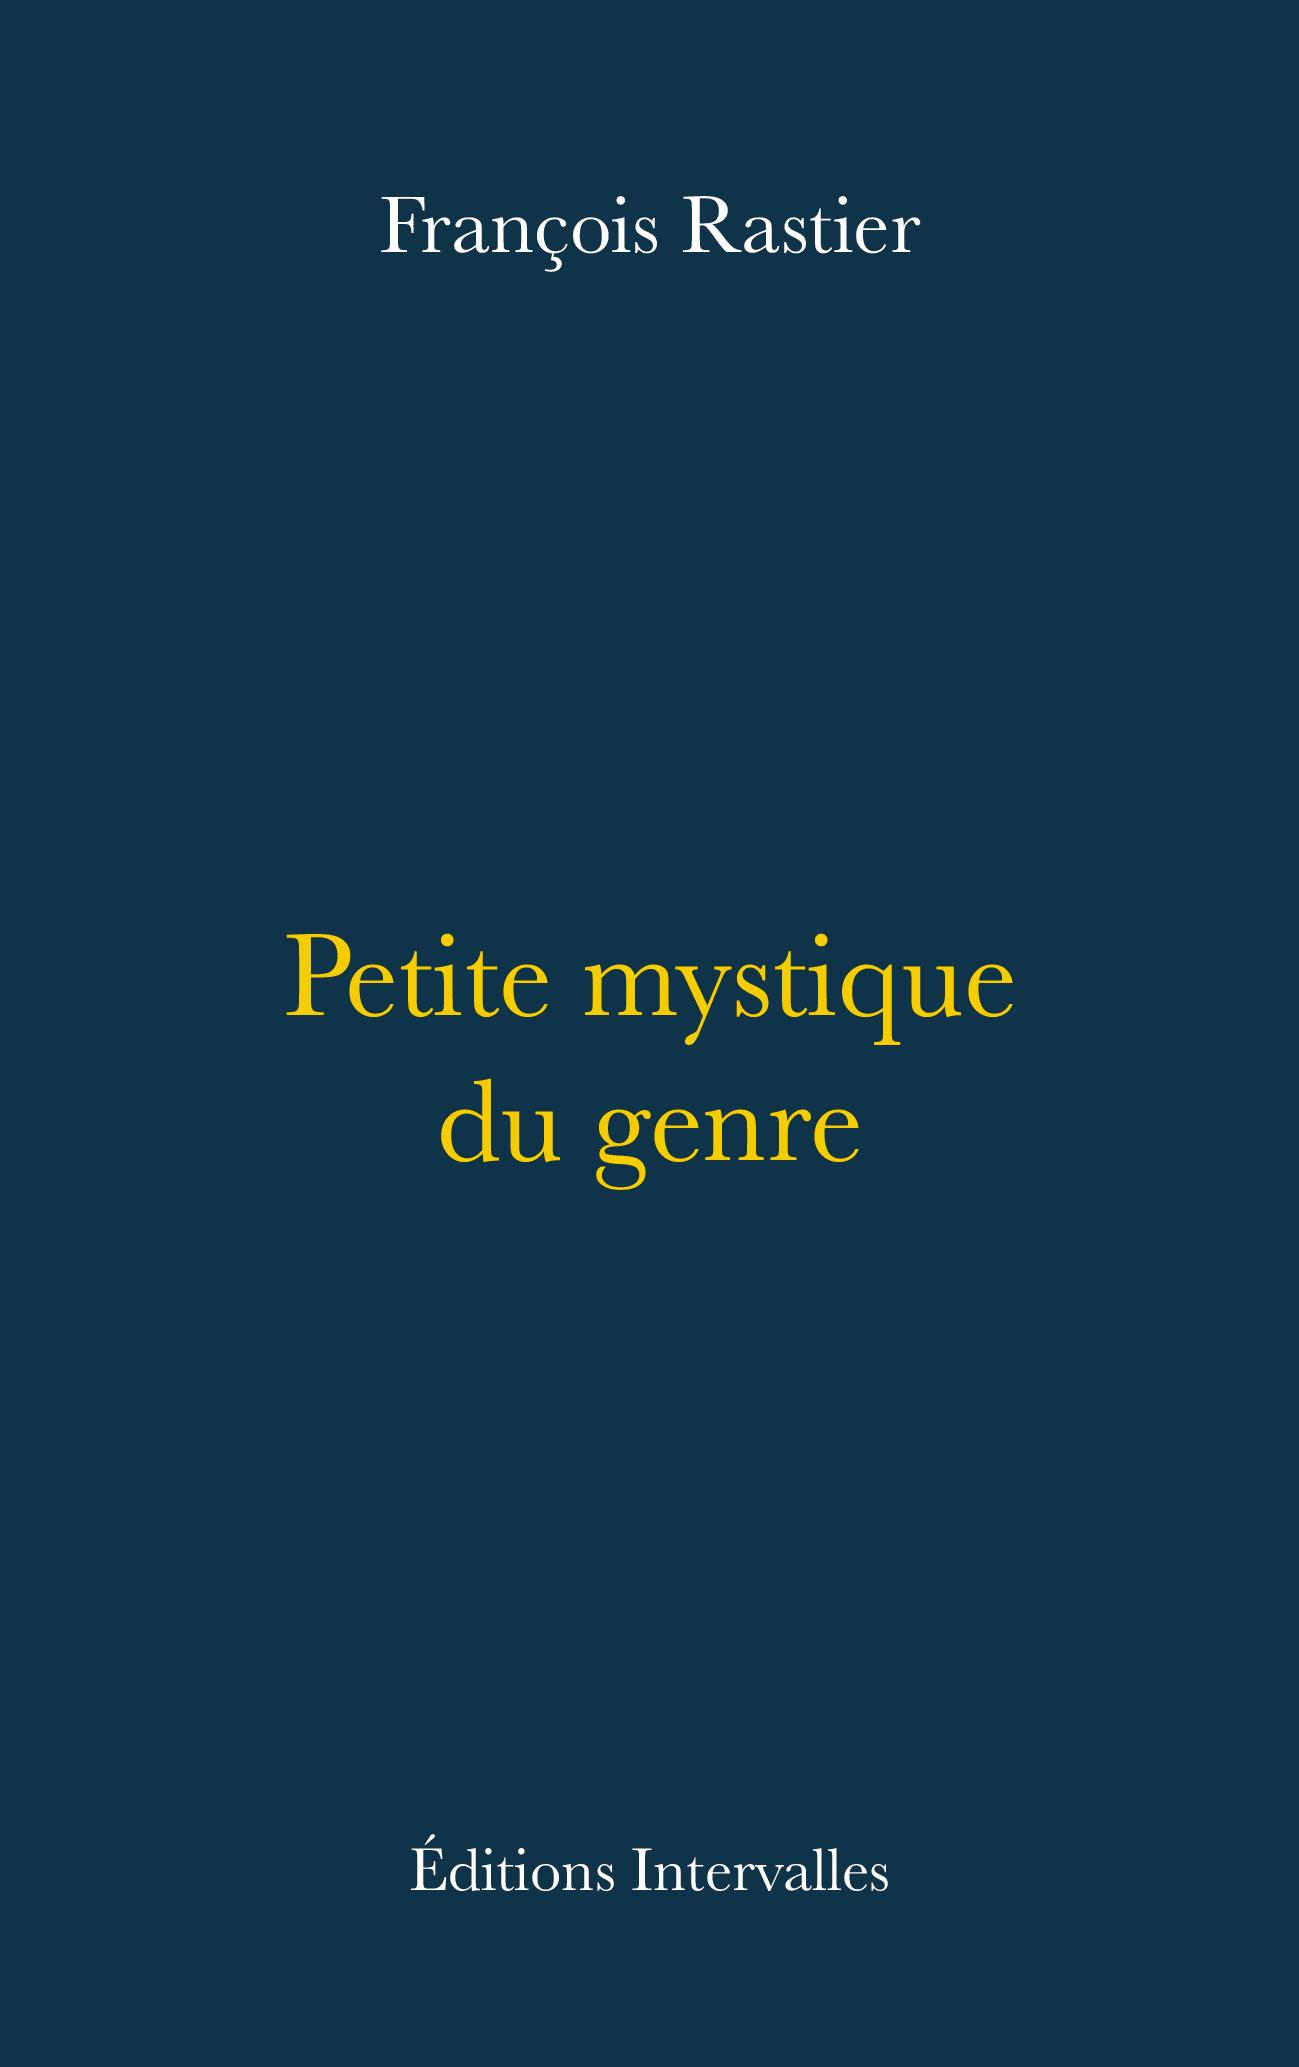 Couverture_petite_mystique_du_genre_françois_rastier